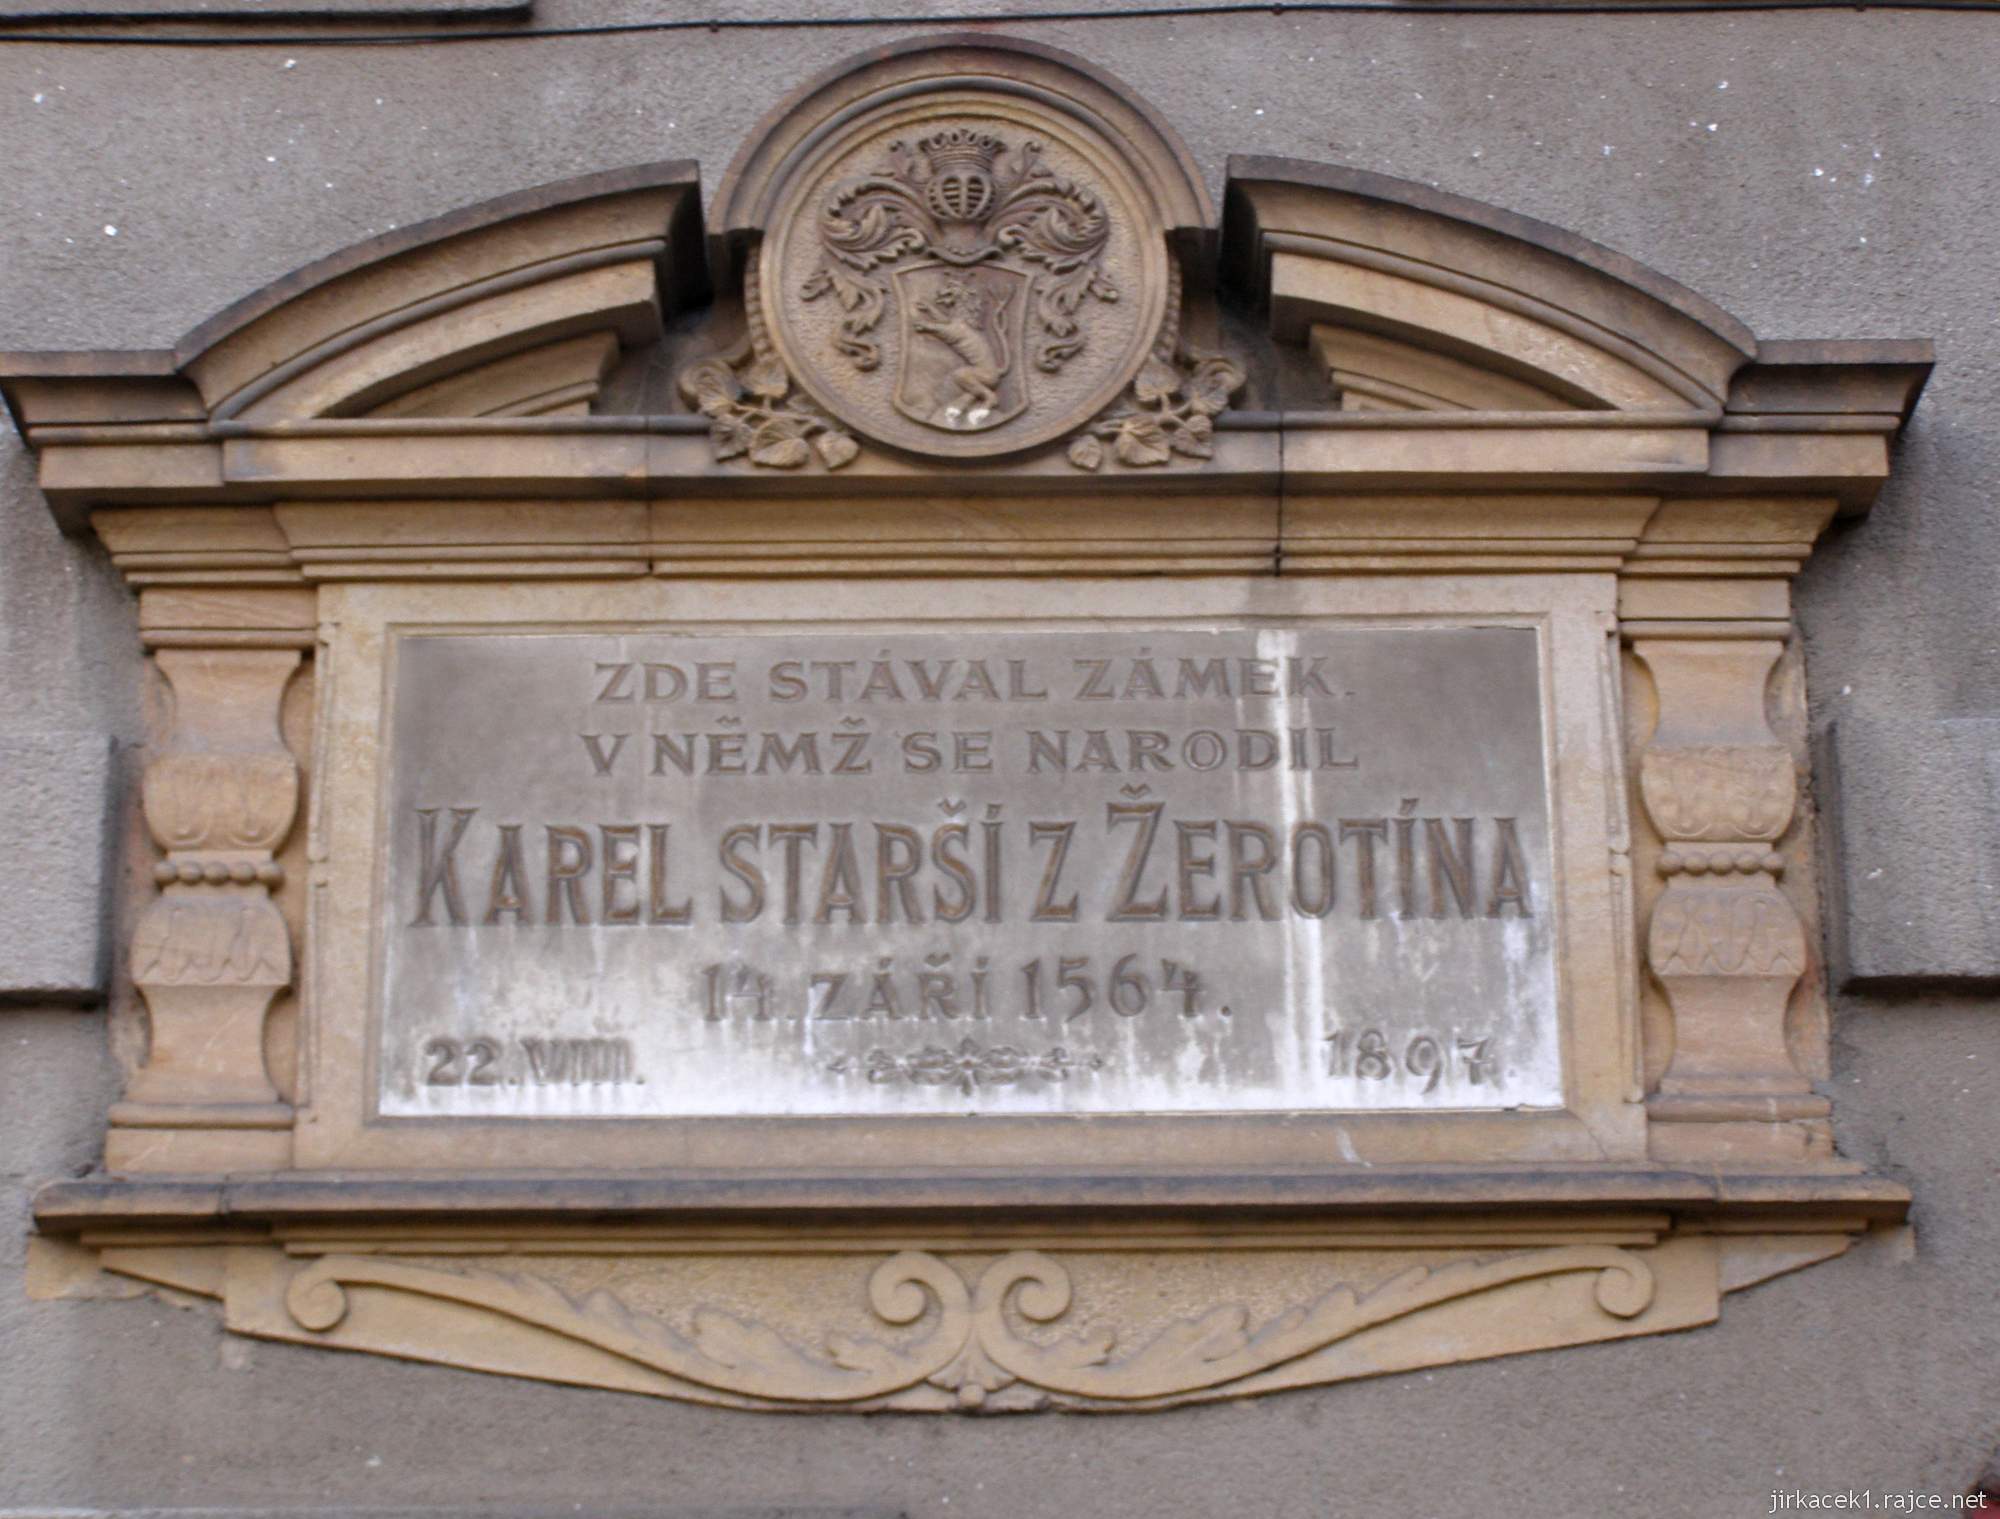 Brandýs - Náměstí Komenského - dům, kde stával zámek v němž se narodil Karel starší ze Žerotína